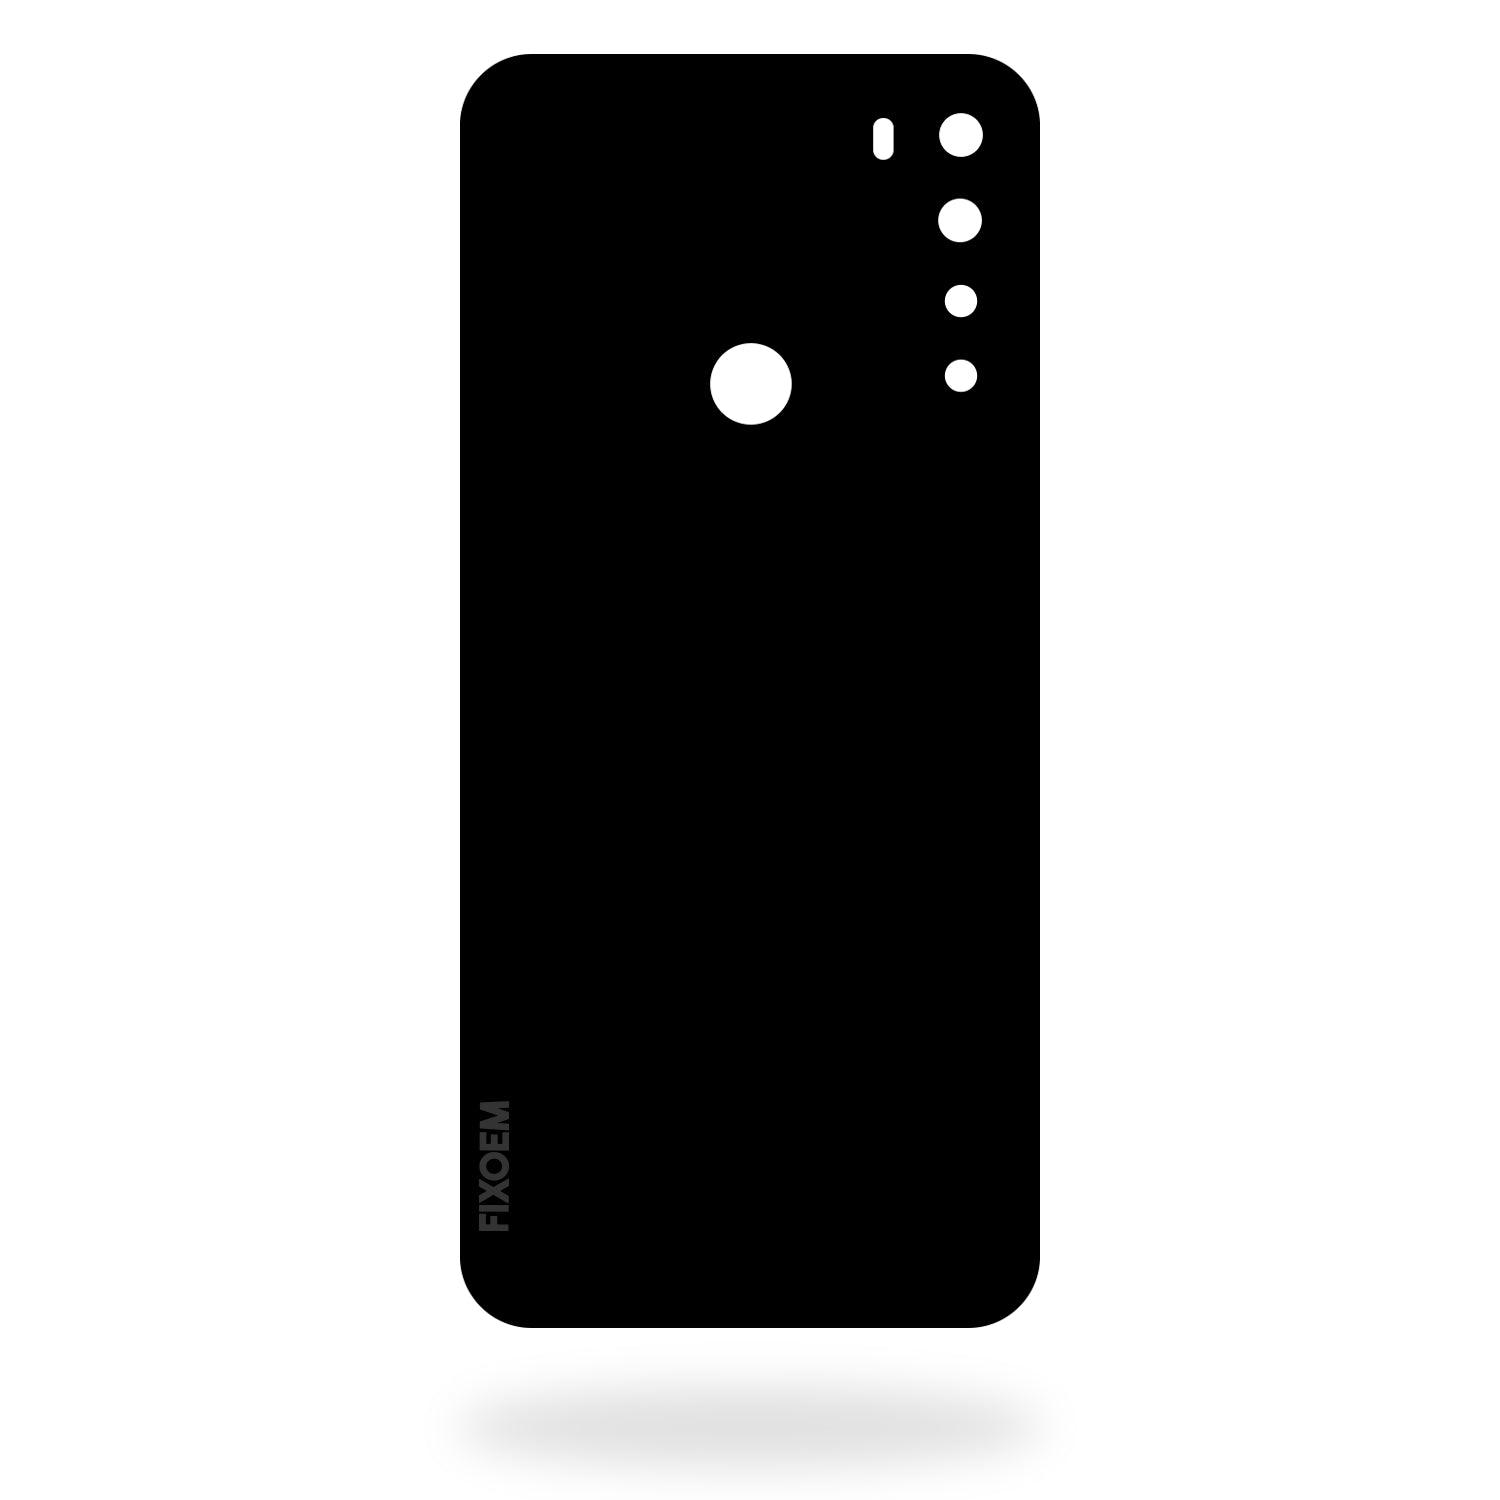 Tapa Trasera Xiaomi Redmi Note 8 M1908C3Jh M1908C3JG M1908C3JI a solo $ 90.00 Refaccion y puestos celulares, refurbish y microelectronica.- FixOEM